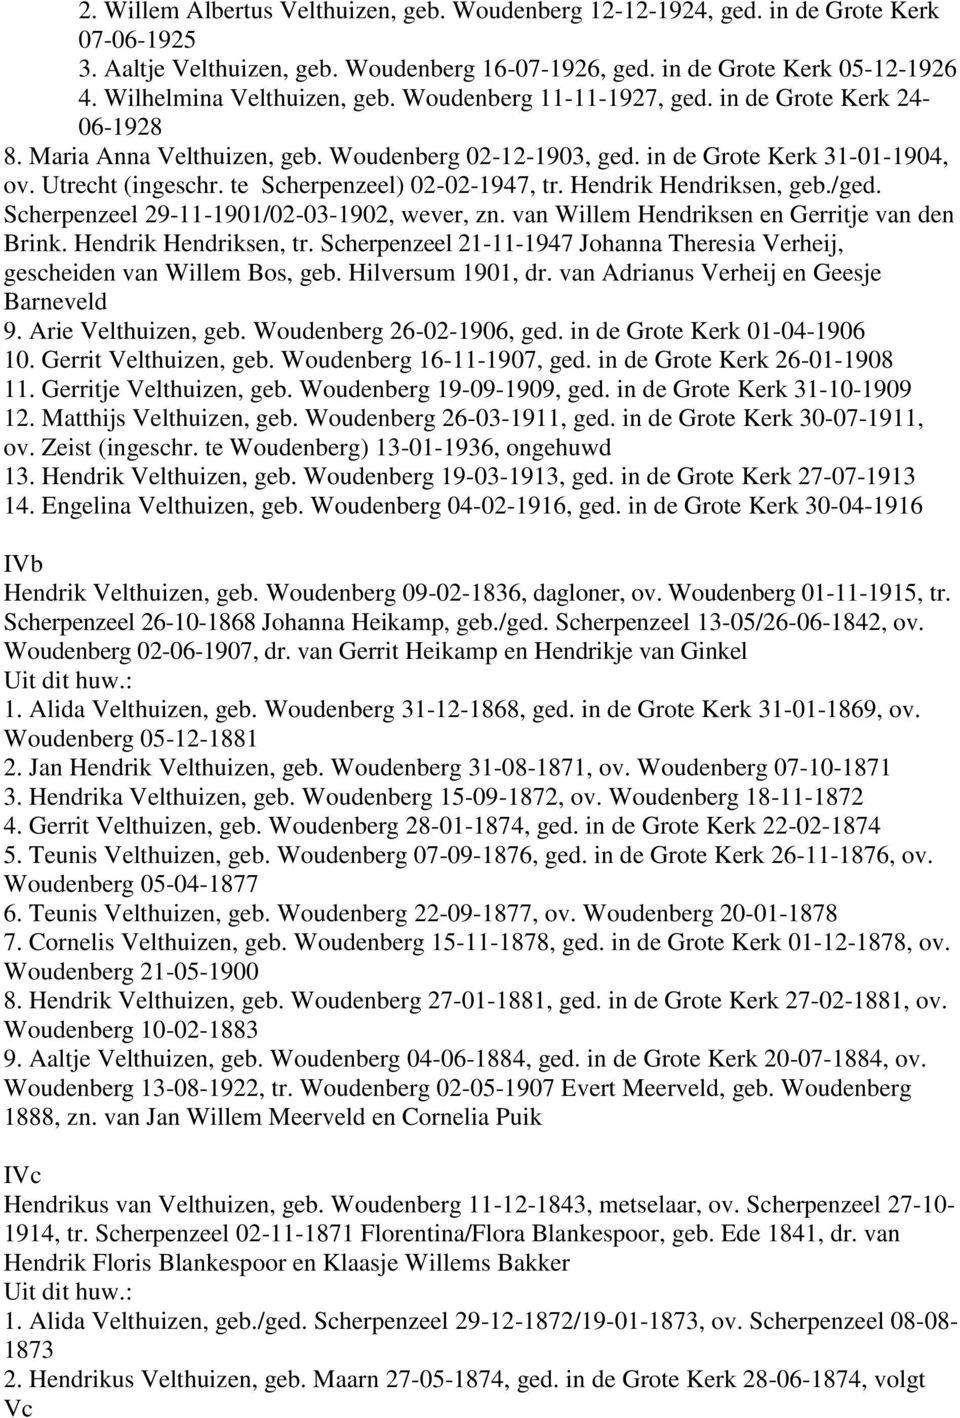 te Scherpenzeel) 02-02-1947, tr. Hendrik Hendriksen, geb./ged. Scherpenzeel 29-11-1901/02-03-1902, wever, zn. van Willem Hendriksen en Gerritje van den Brink. Hendrik Hendriksen, tr.